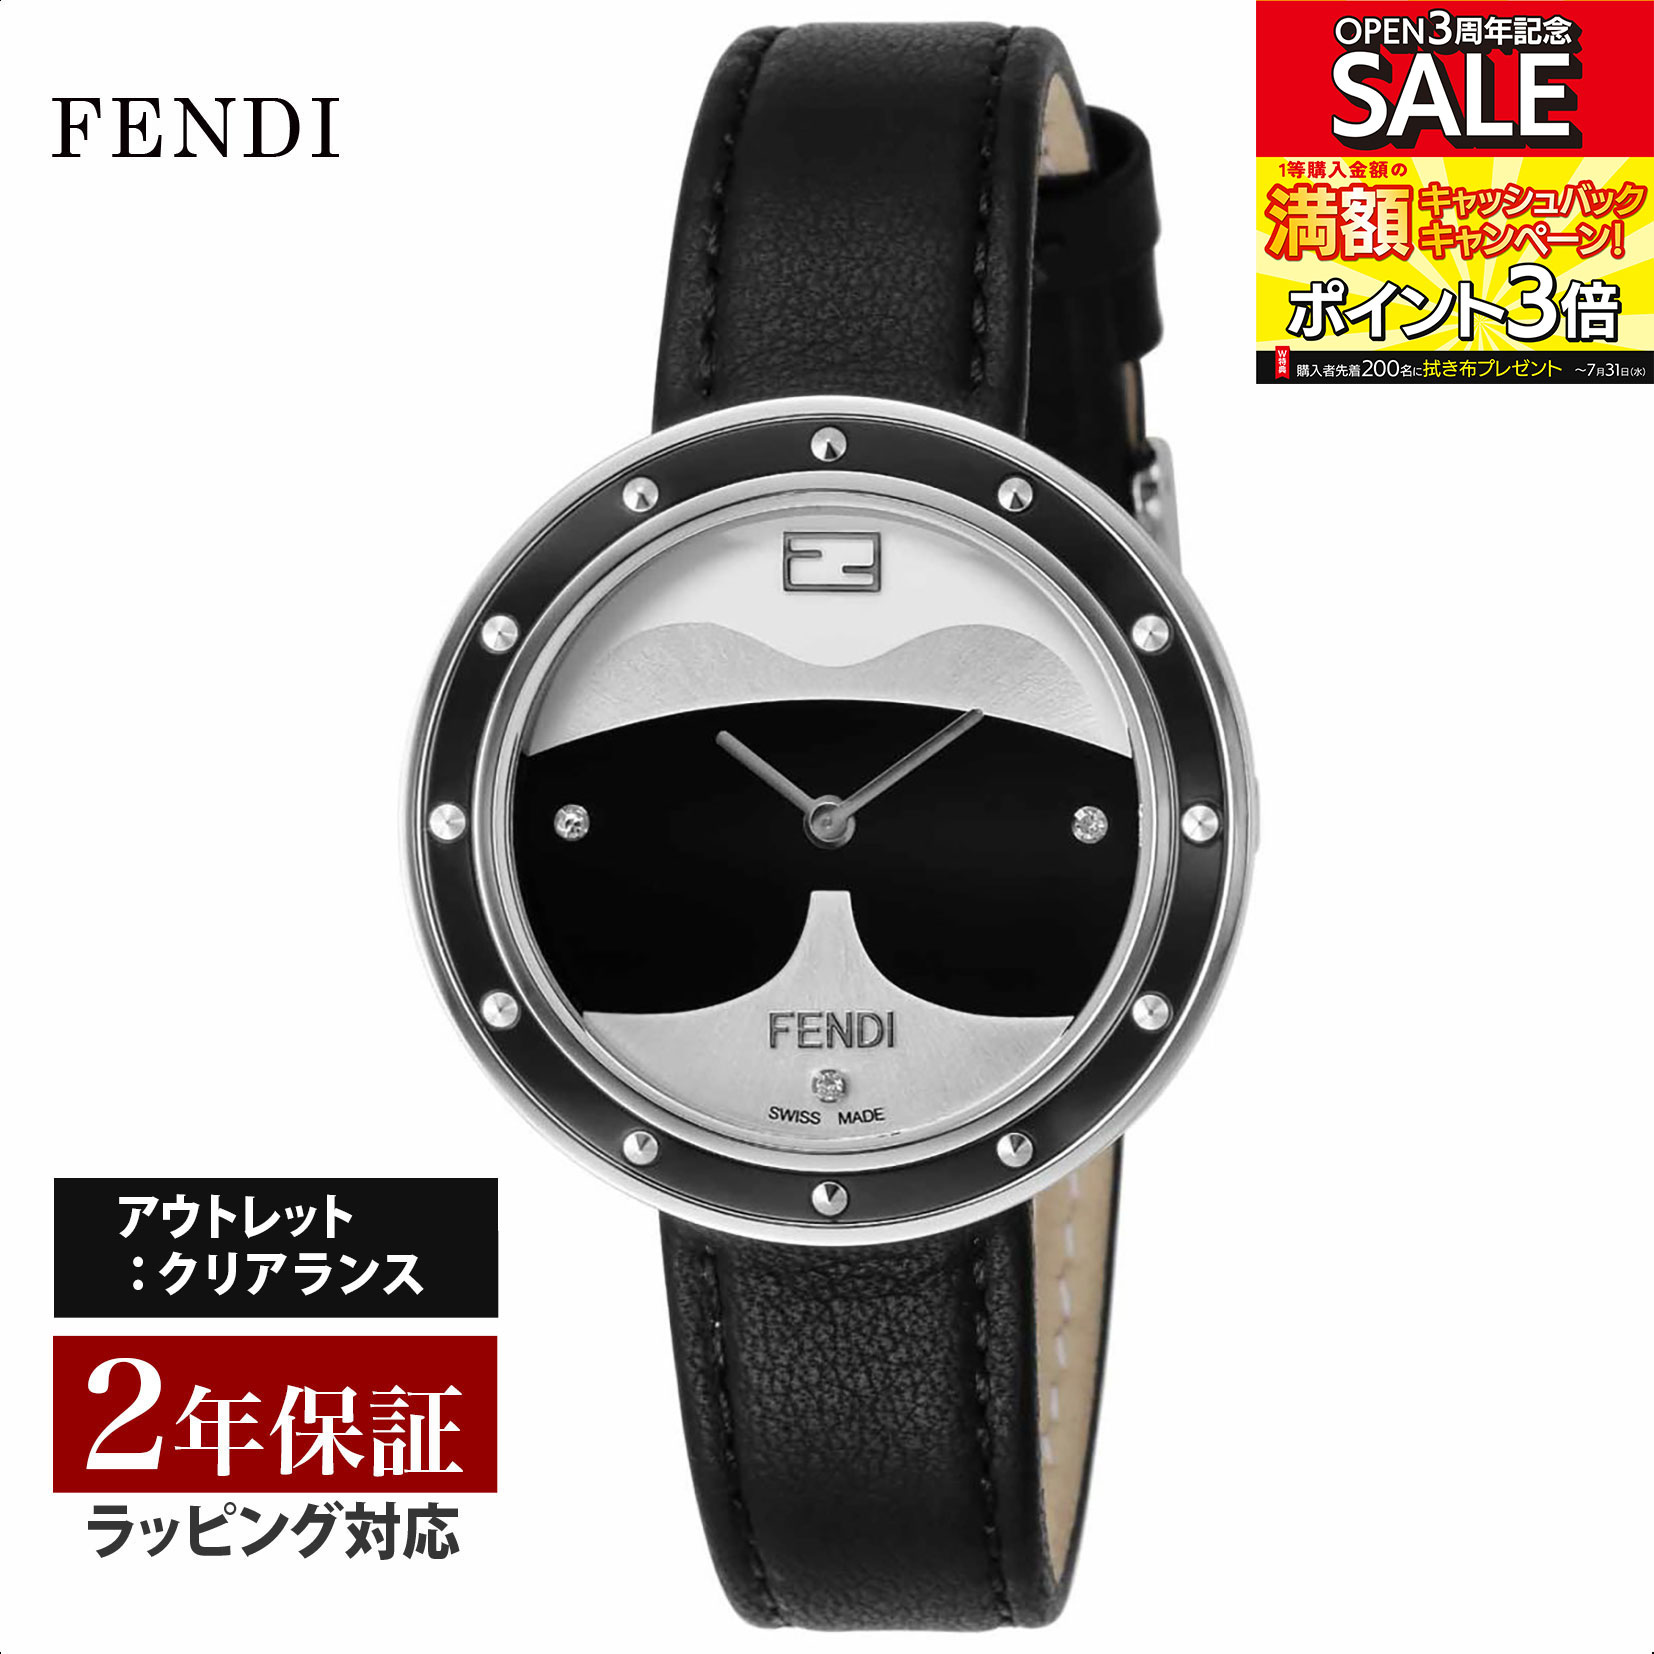 【クリアランスSALE】 FENDI フェンディ MayWay クォーツ レディース ブラック F363031611D1 腕時計 高級腕時計 ブランド 